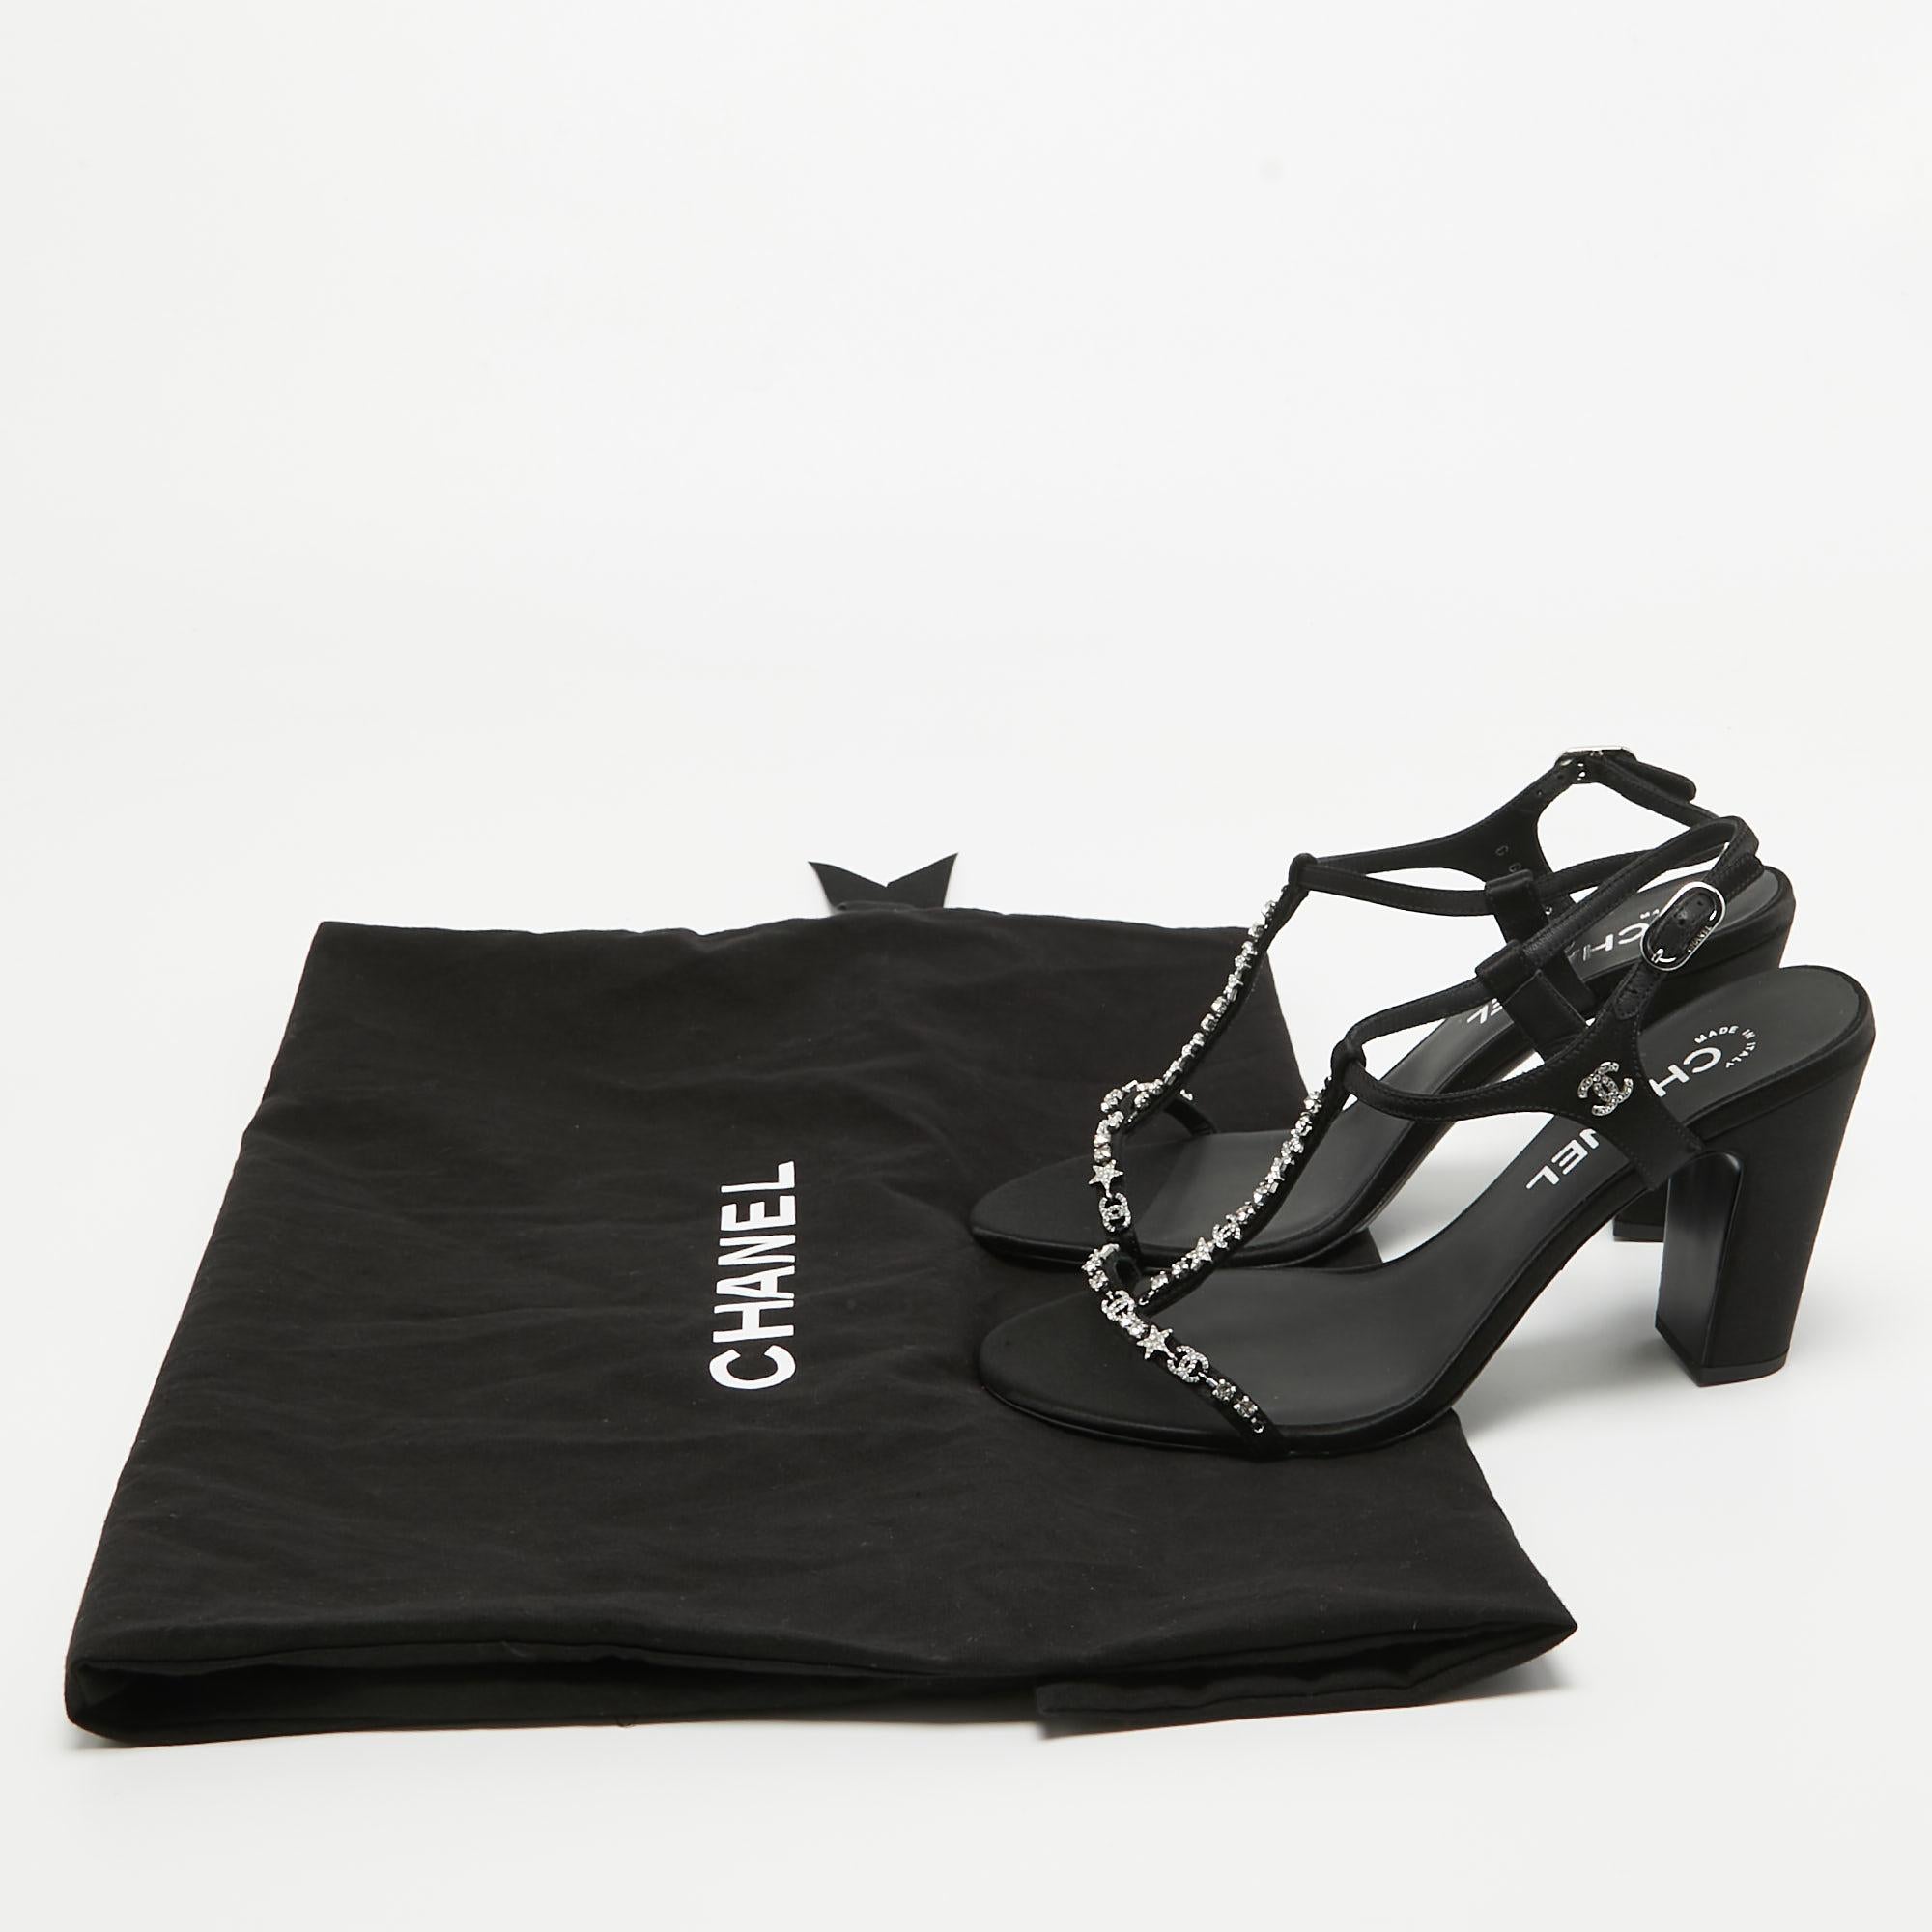 Chanel Black Satin Crystal Embellished CC Logo Sandals Size 37 5